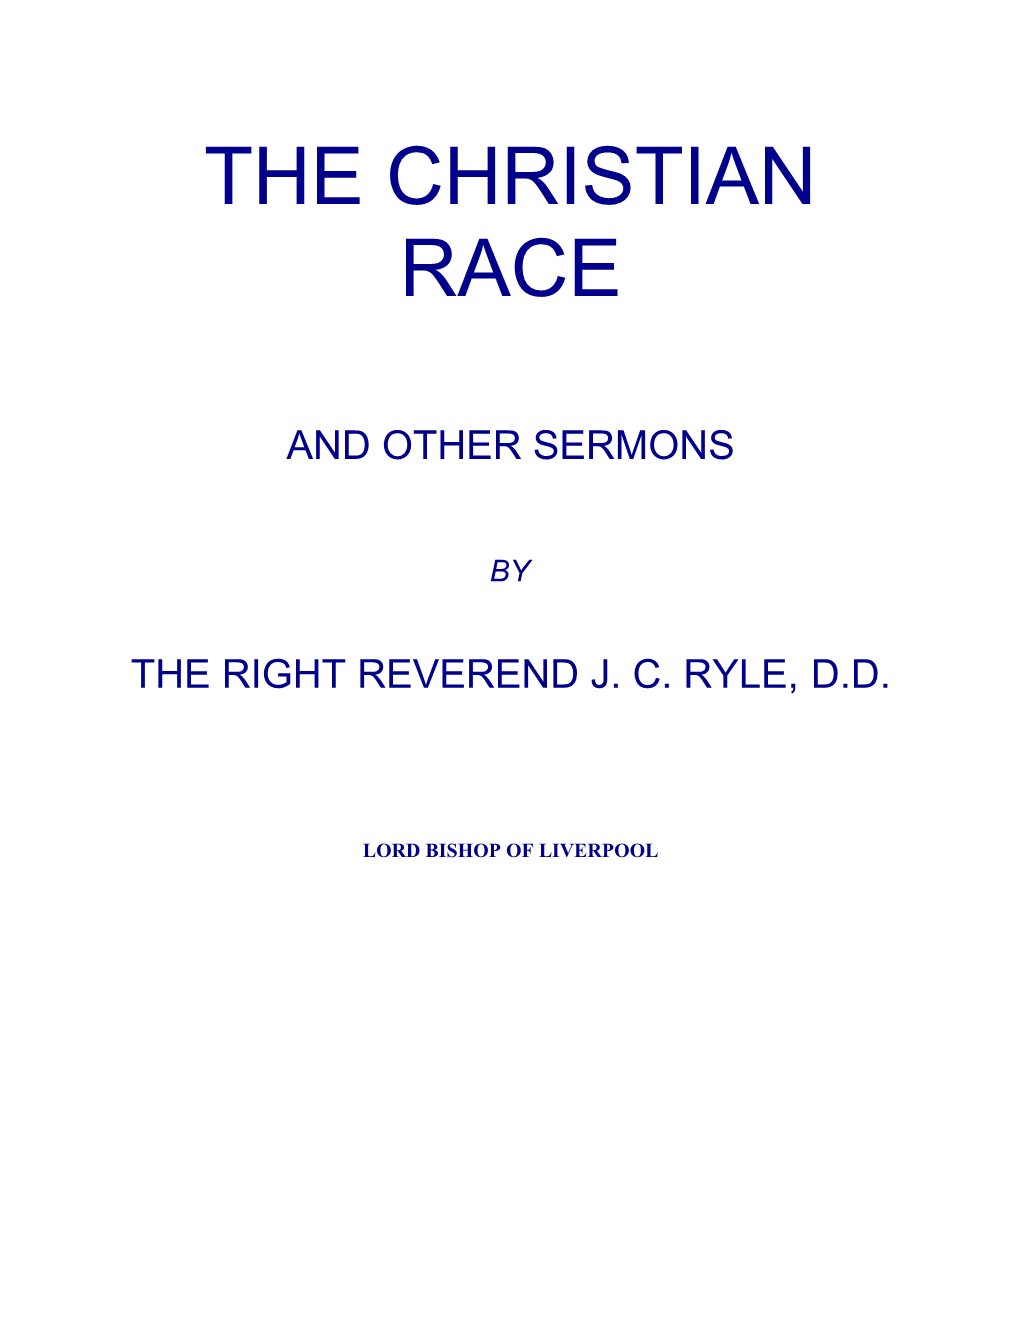 The Right Reverend J. C. Ryle, D.D